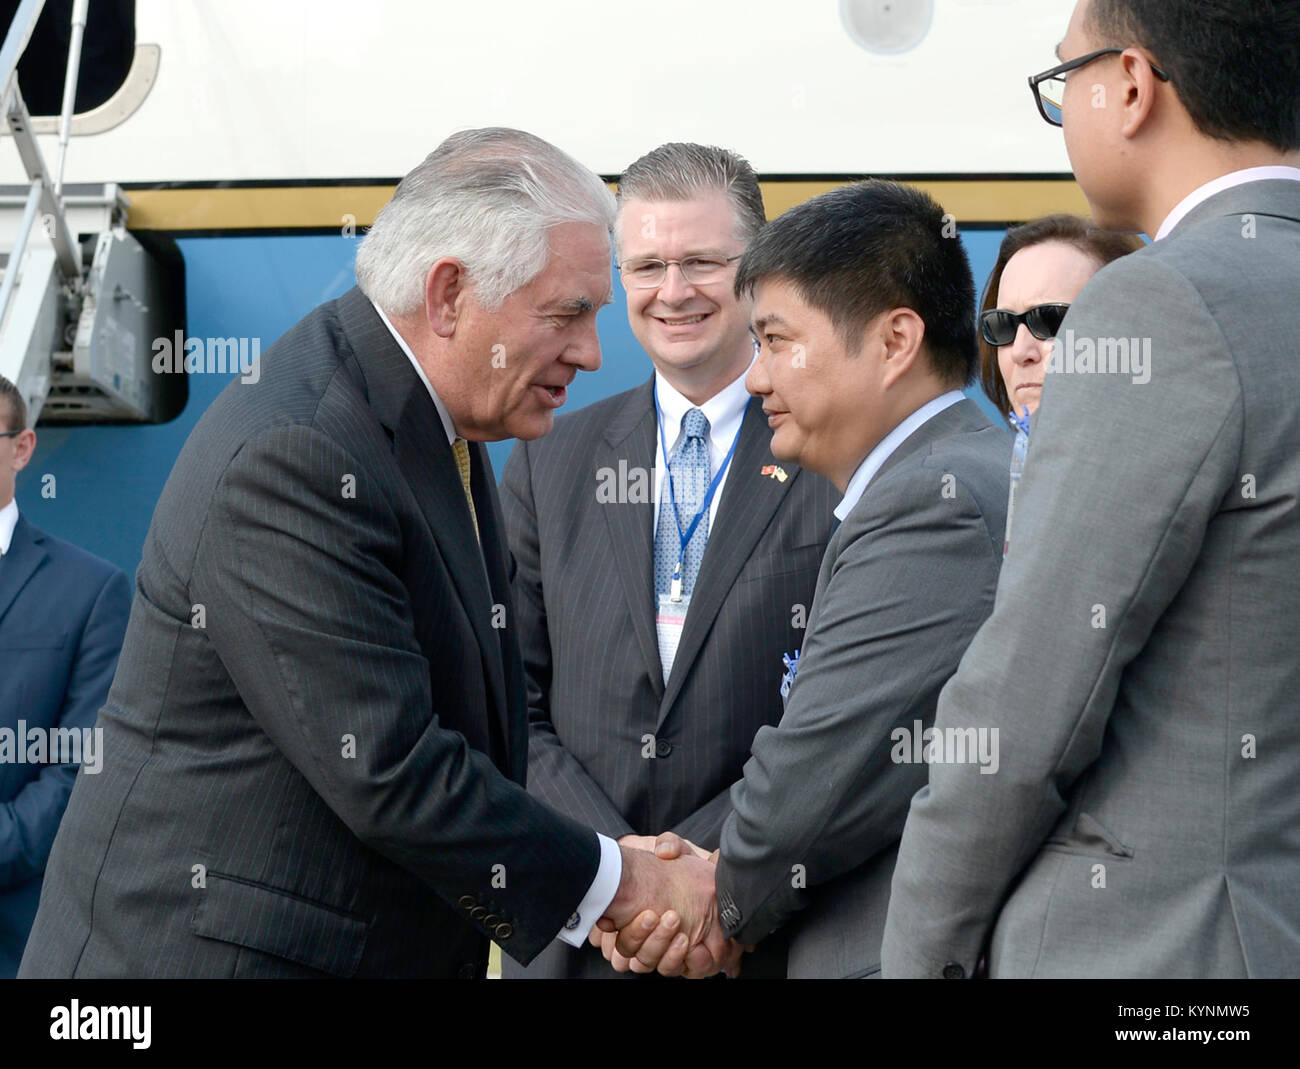 La secrétaire d'État des États-Unis, Rex Tillerson est accueilli par M. Tran Thanh Tam, directeur adjoint, Amériques, Ministère des affaires étrangères à son arrivée à Hanoi, Vietnam, le 11 novembre 2017, où il accompagne le président Trump pour une visite officielle de l'Etat. Banque D'Images